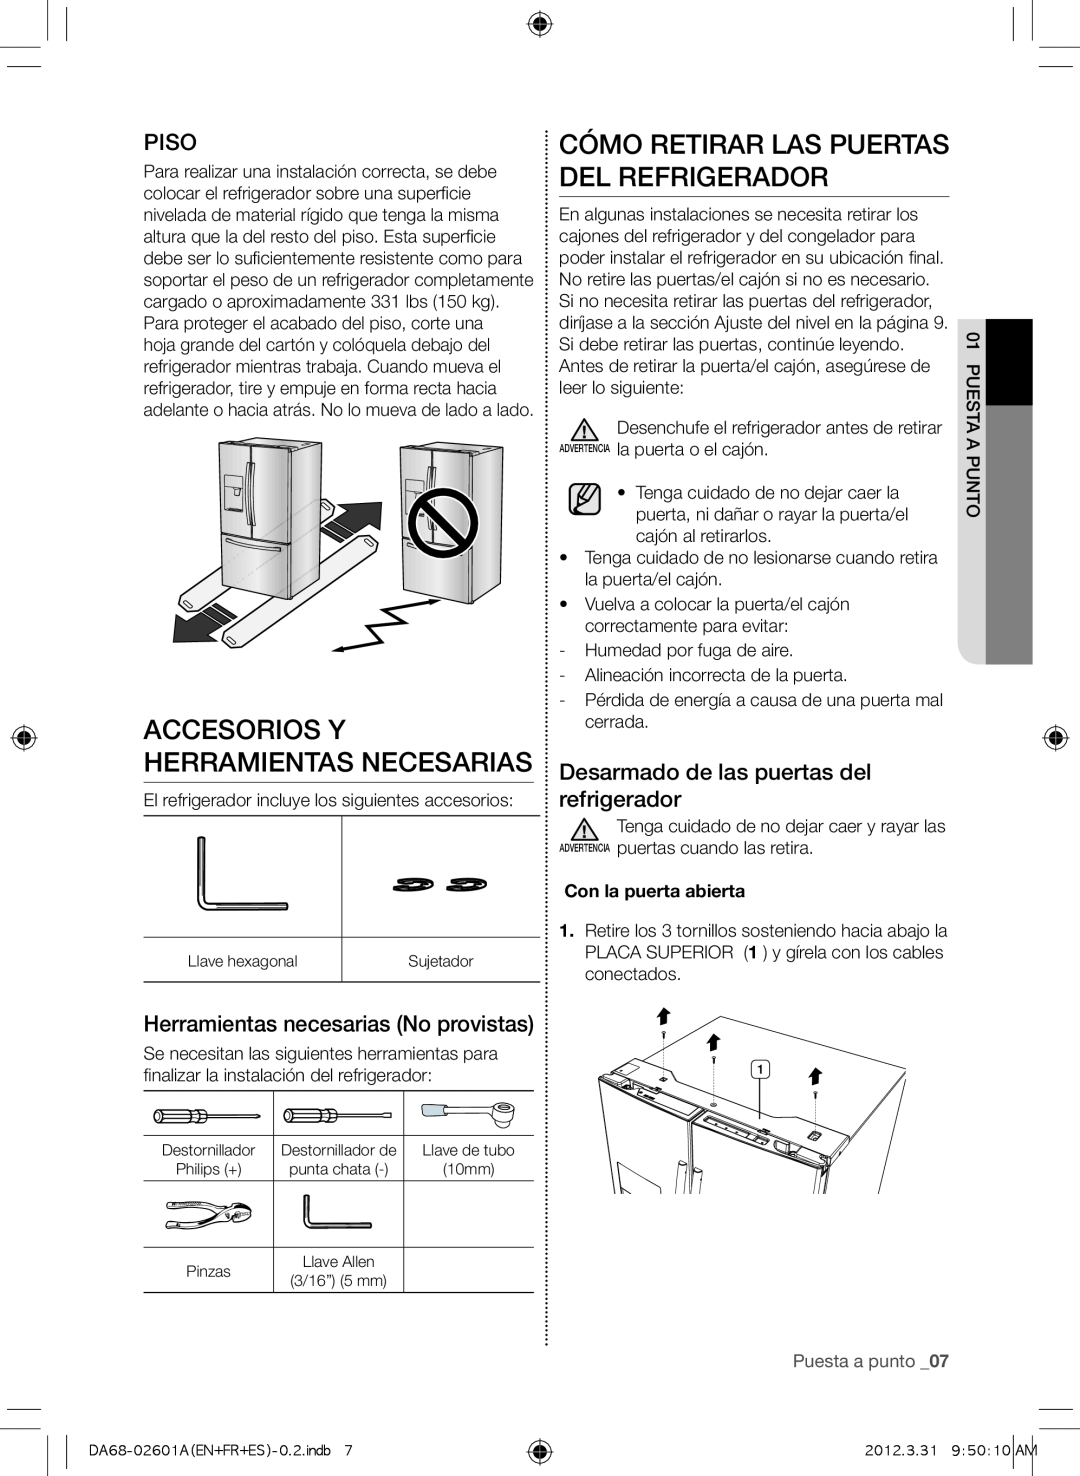 Samsung RF263BEAEWW Accesorios y herramientas necesarias, Cómo retirar las puertas del refrigerador, Piso, Puesta a punto 